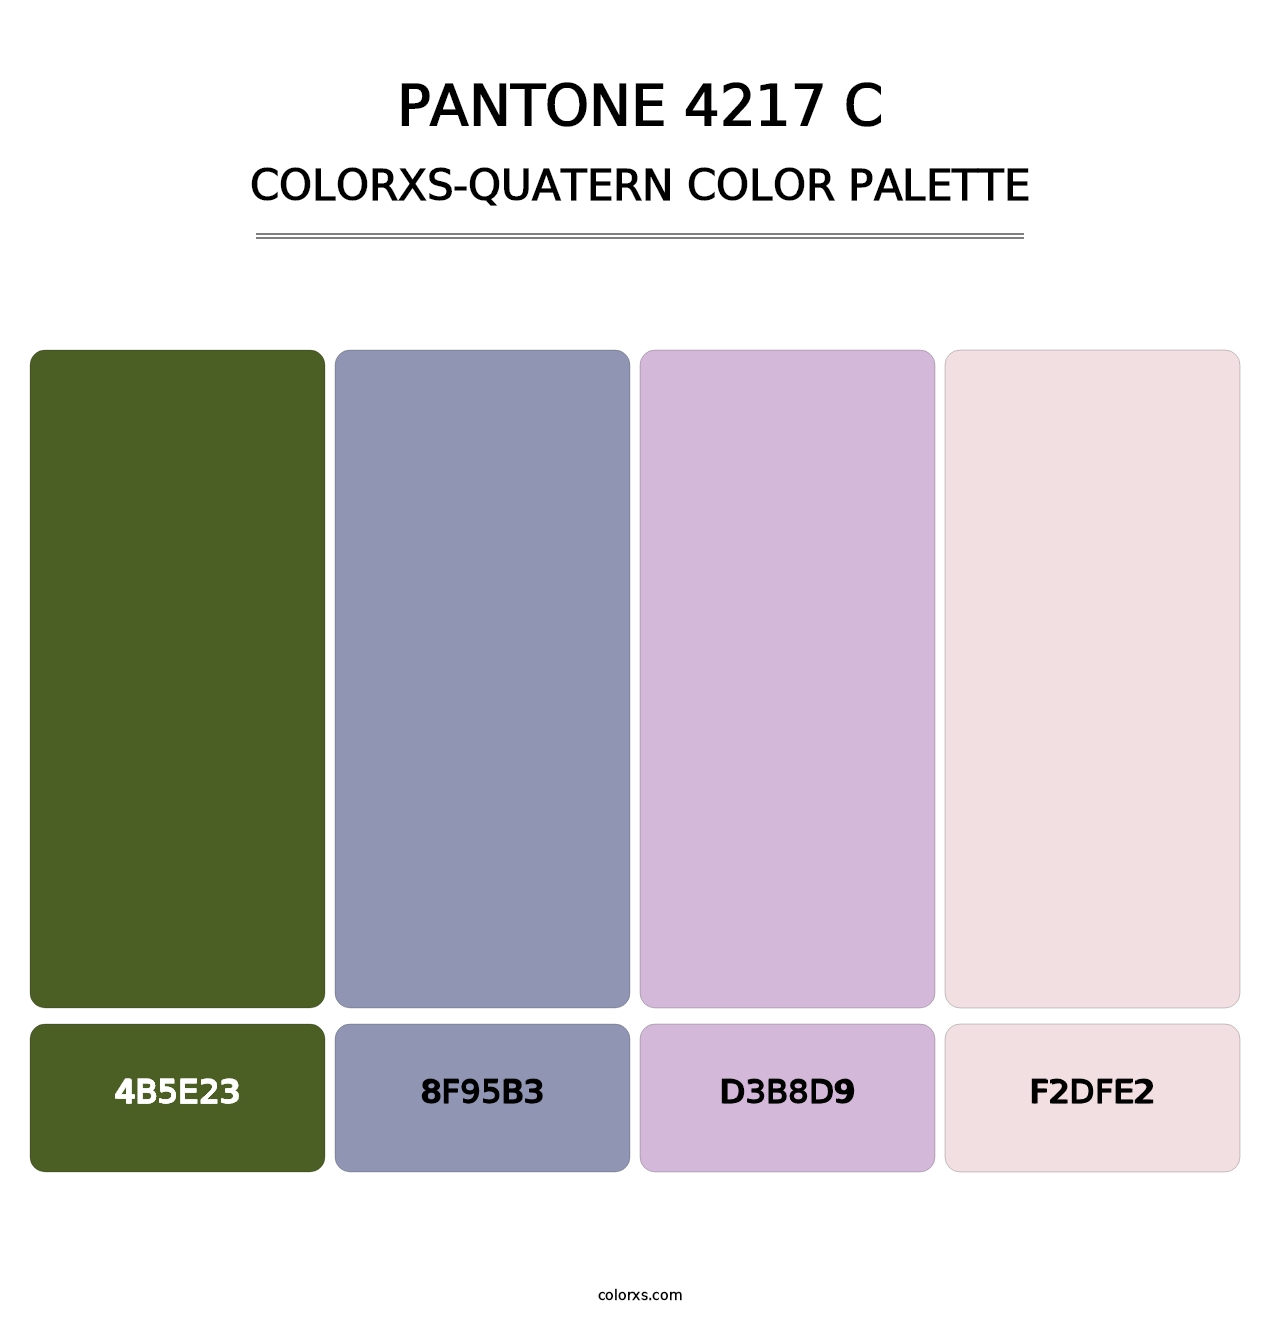 PANTONE 4217 C - Colorxs Quatern Palette